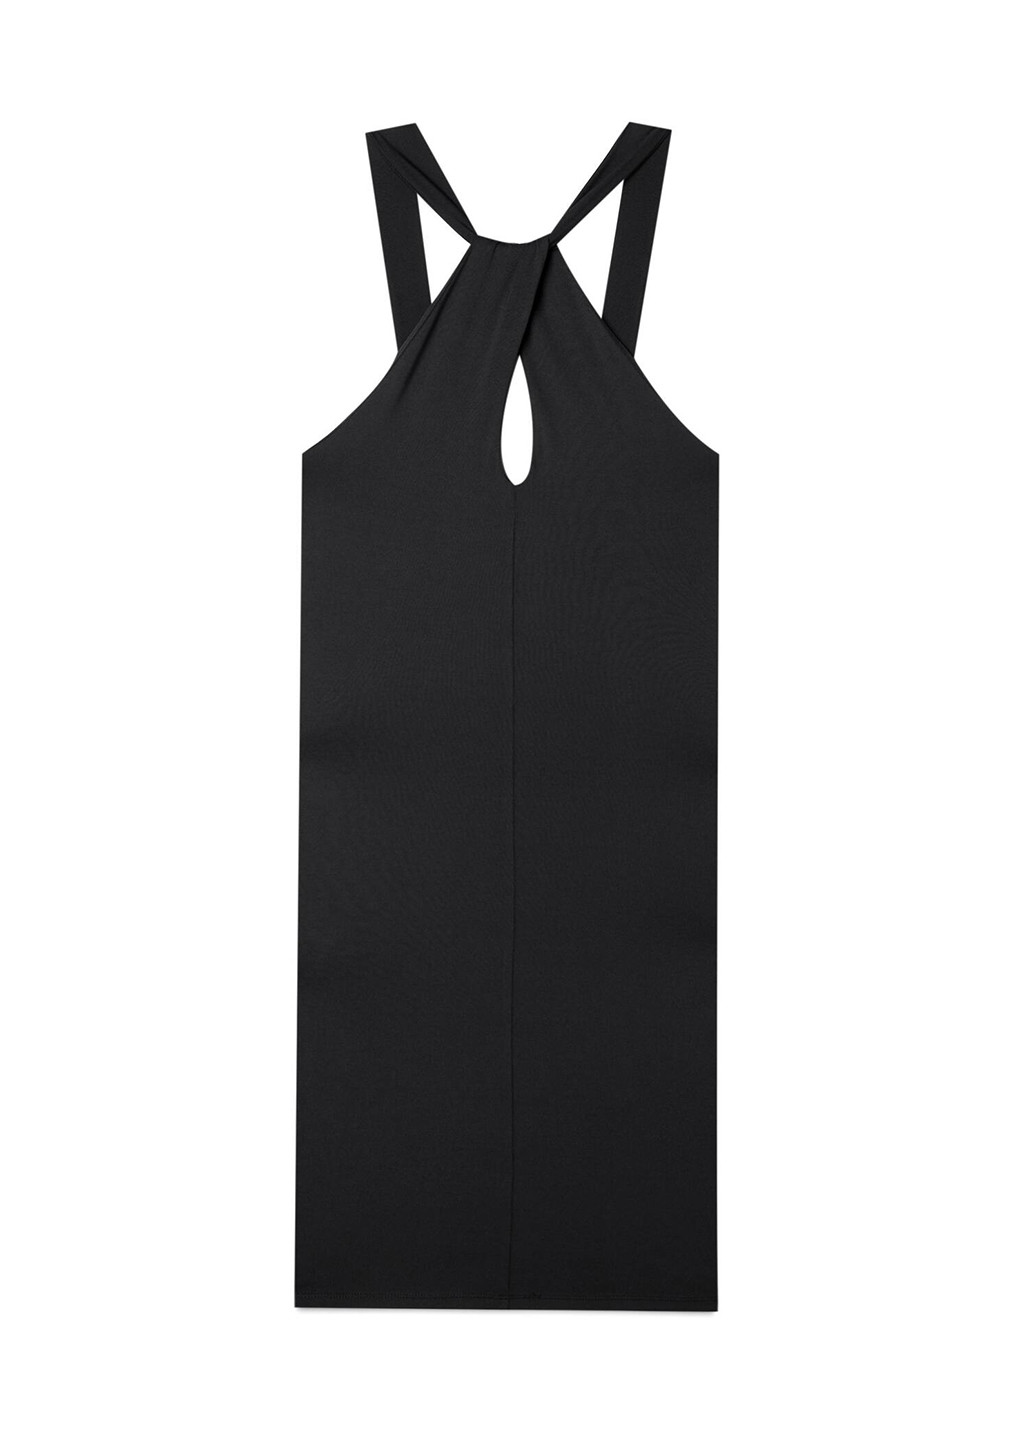 Черное коктейльное платье футляр Stradivarius однотонное